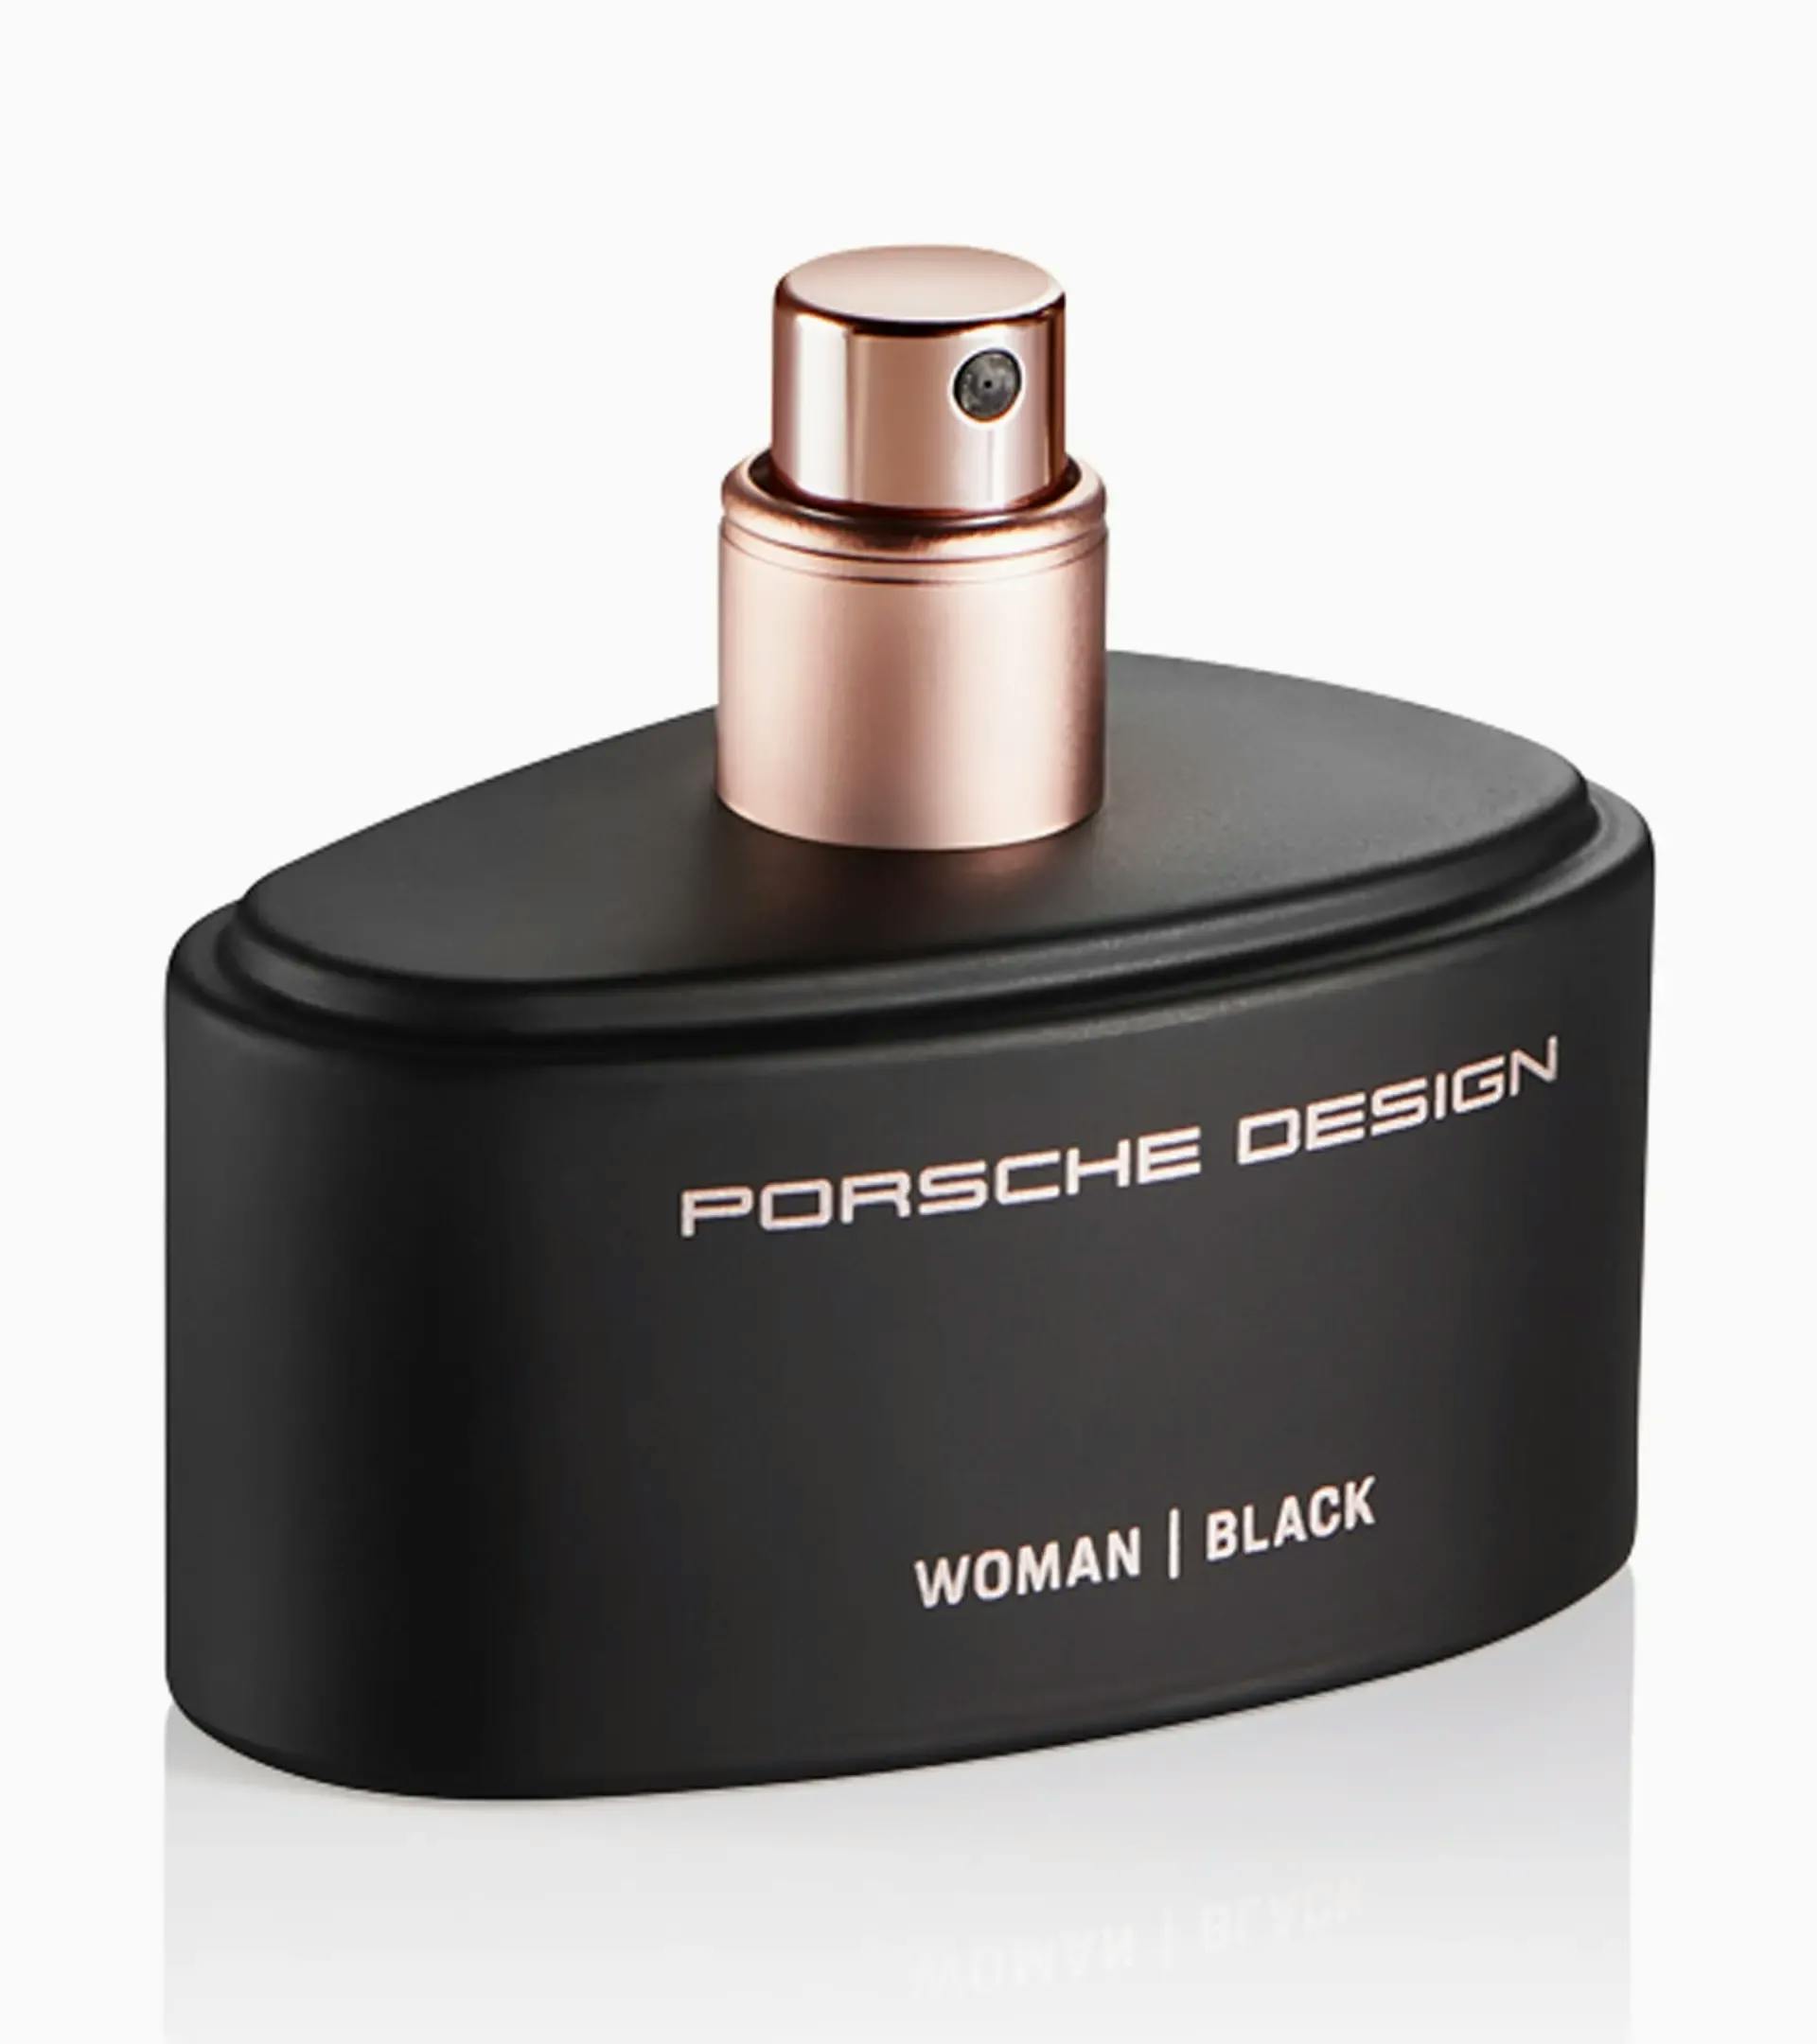 Porsche Design Woman | Black Eau de Parfum 2